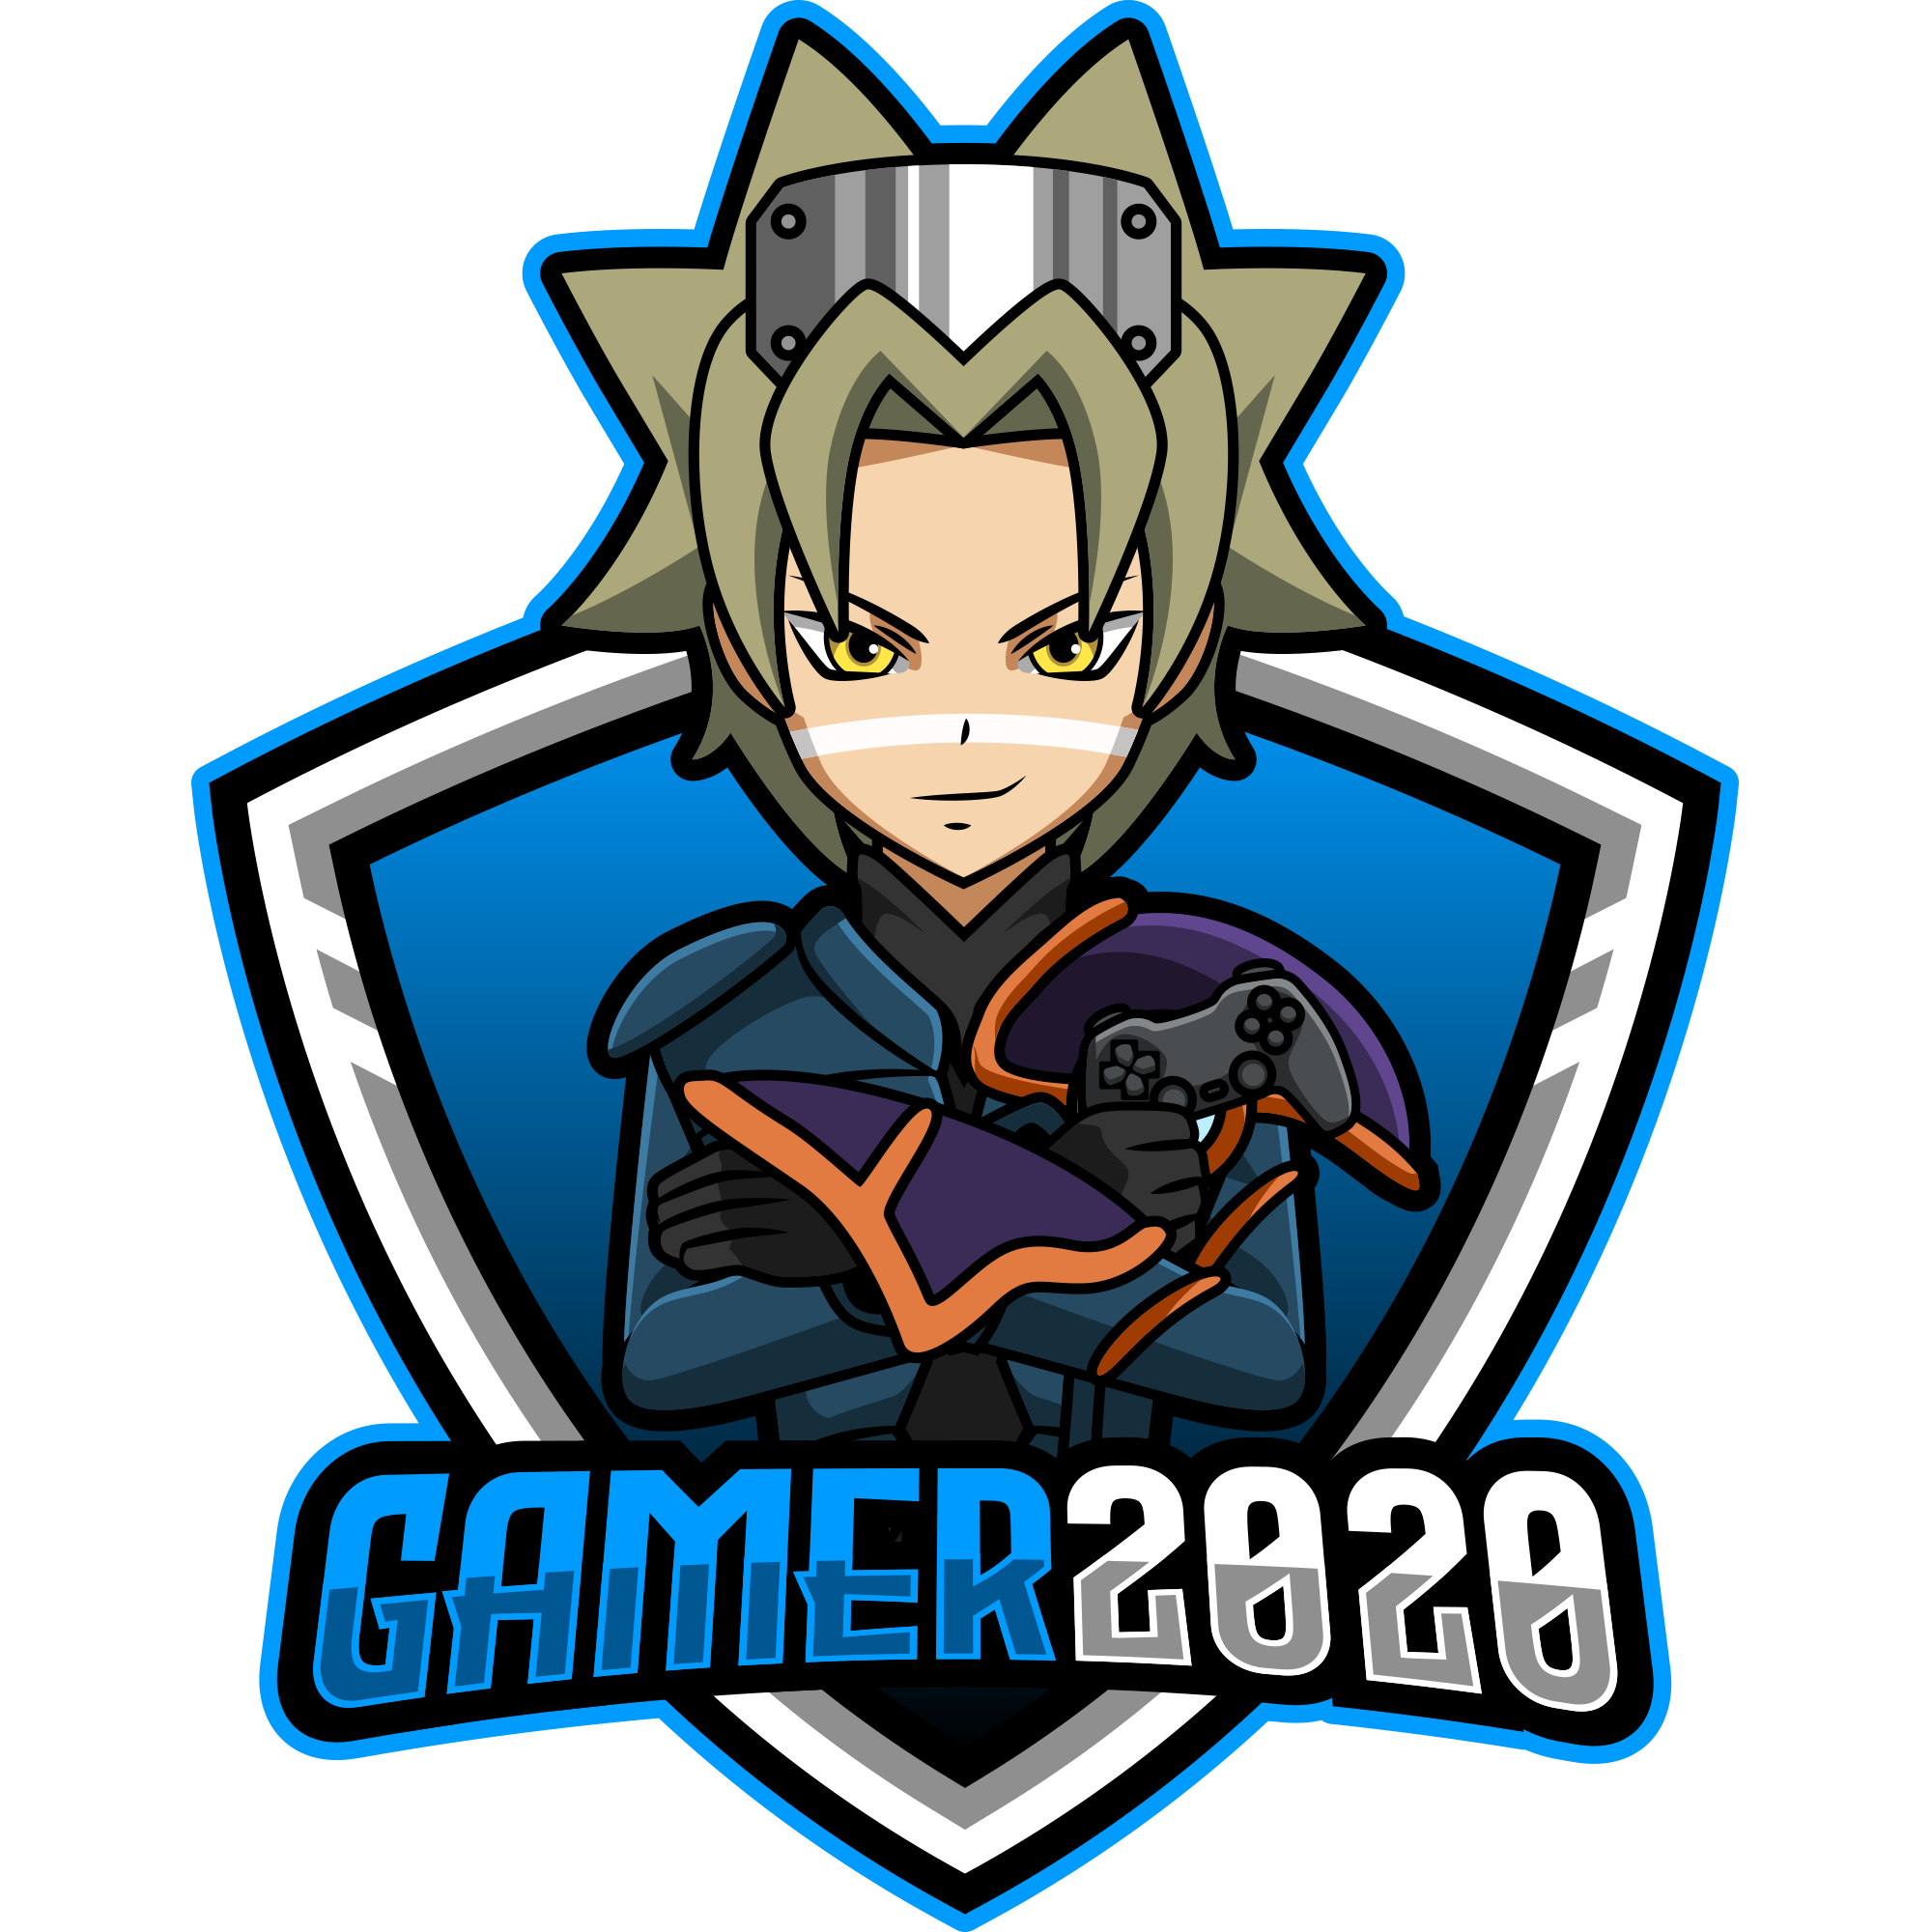 Gamer2020